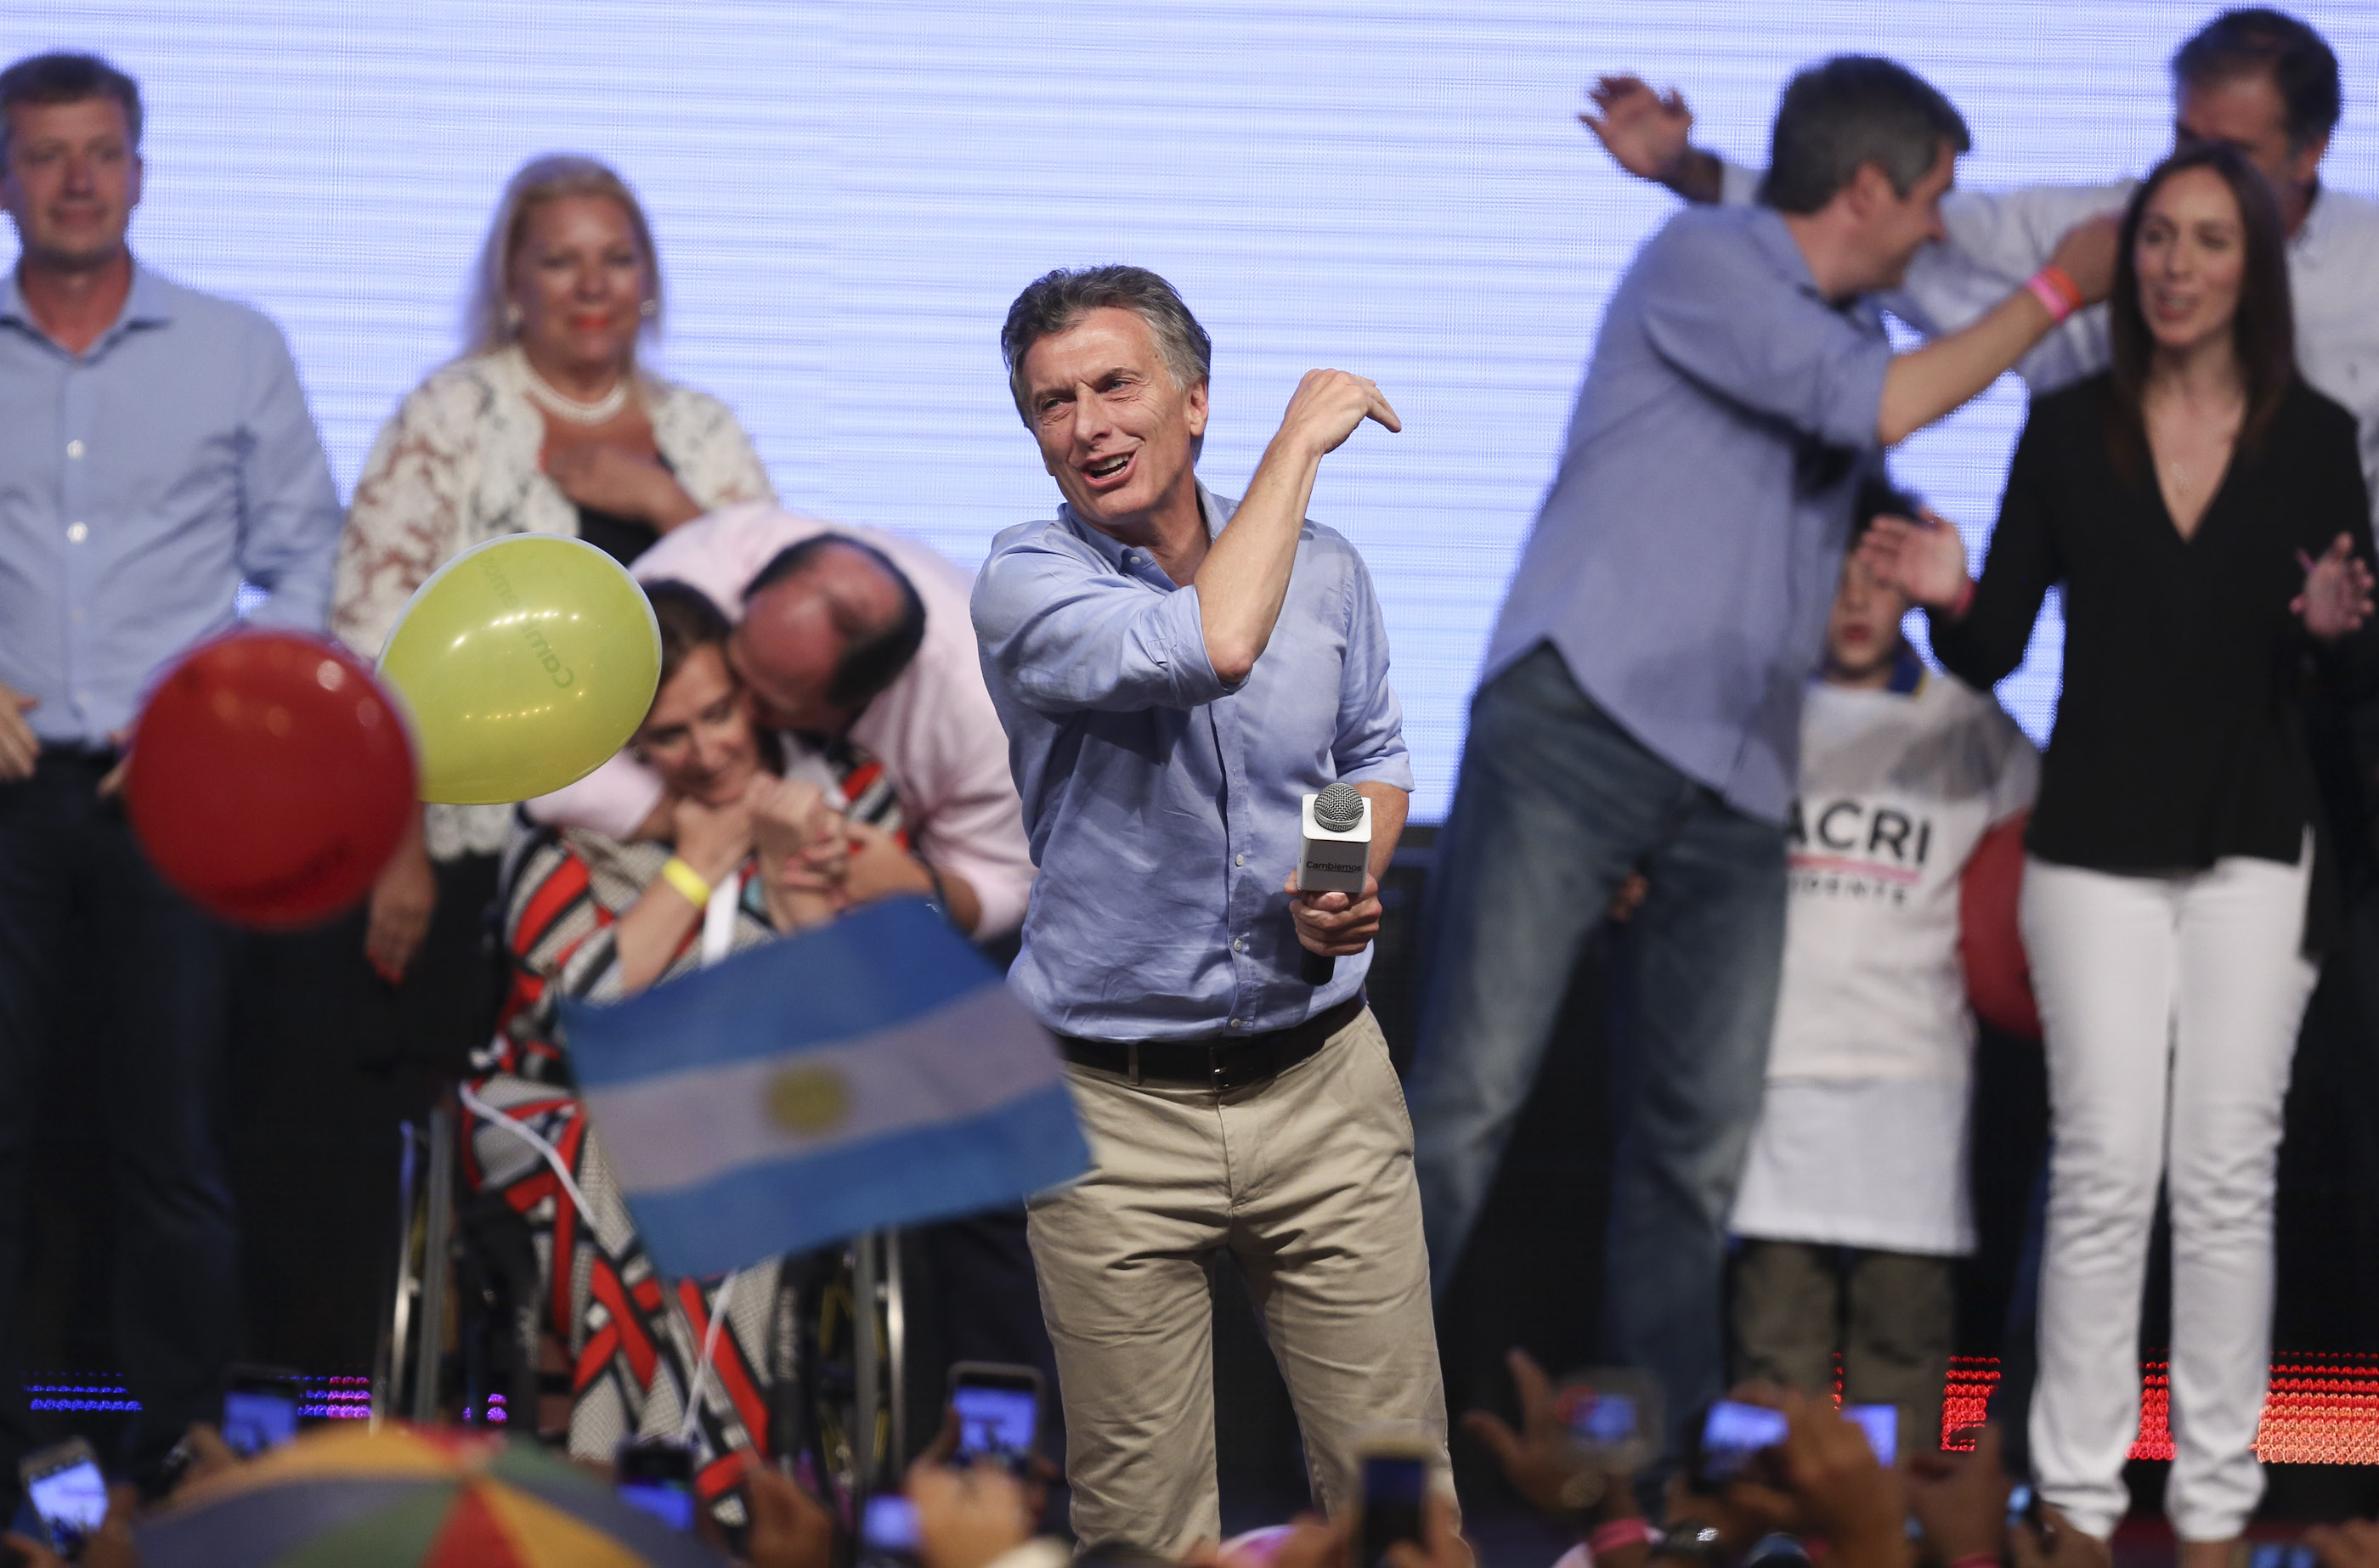 BUENOS AIRES (ARGENTINA), 22/11/2015.- El líder del frente opositor Cambiemos, Mauricio Macri, saluda a seguidores hoy, domingo 22 de noviembre de 2015, en Buenos Aires (Argentina). Mauricio Macri, ganó hoy la segunda vuelta de las elecciones presidenciales en Argentina y se convertirá en el nuevo mandatario del país, según los datos con más del 60 % del escrutinio efectuado. Con el 66,37 por ciento de las mesas escrutadas, Macri logró un 53,46 por ciento de votos frente al 46,54 por ciento del oficialista Daniel Scioli, del gobernante Frente para la Victoria. Los datos difundidos por el Ejecutivo argentino, a cargo del escrutinio provisional de los comicios, indican que el nivel de participación en esta jornada electoral ha sido del 80,63 por ciento. Inmediatamente después de conocerse estos resultados, Scioli reconoció su derrota y felicitó a su oponente. EFE/David Fernández